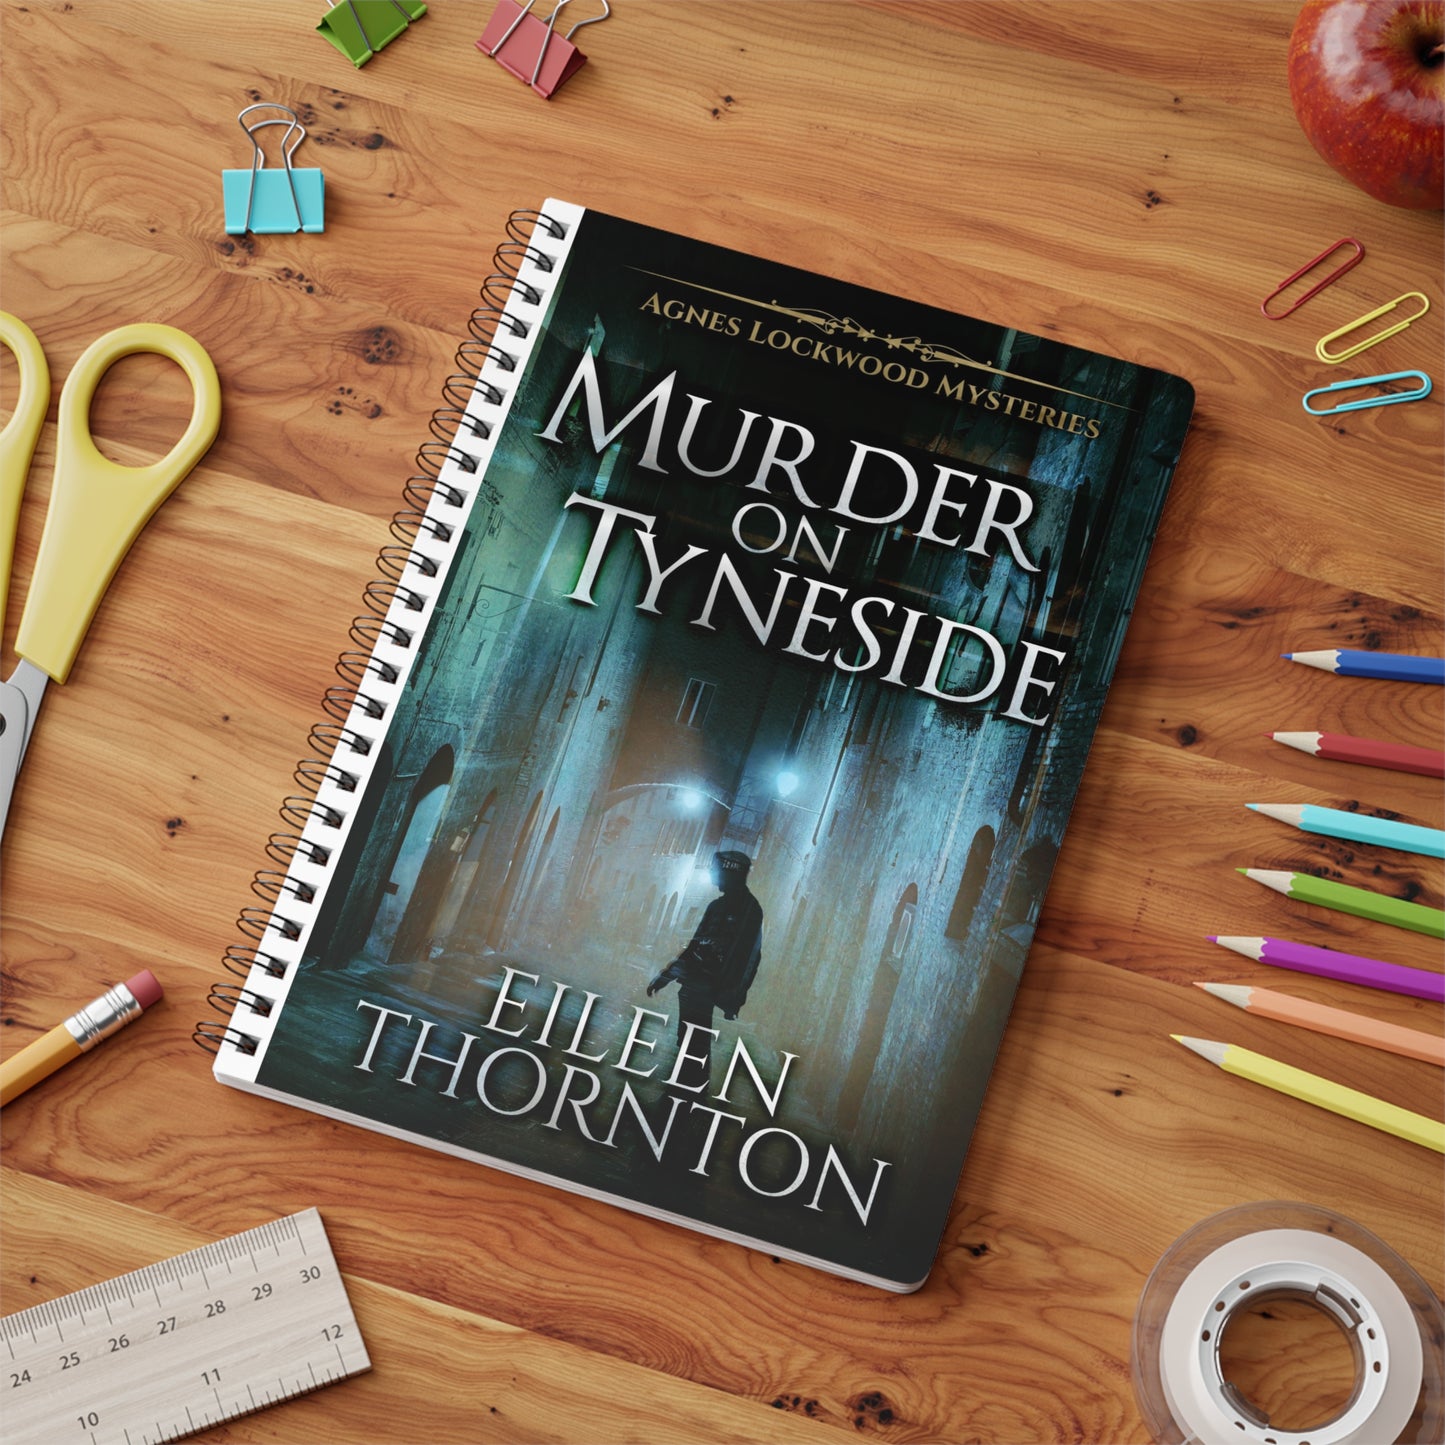 Murder on Tyneside - A5 Wirebound Notebook